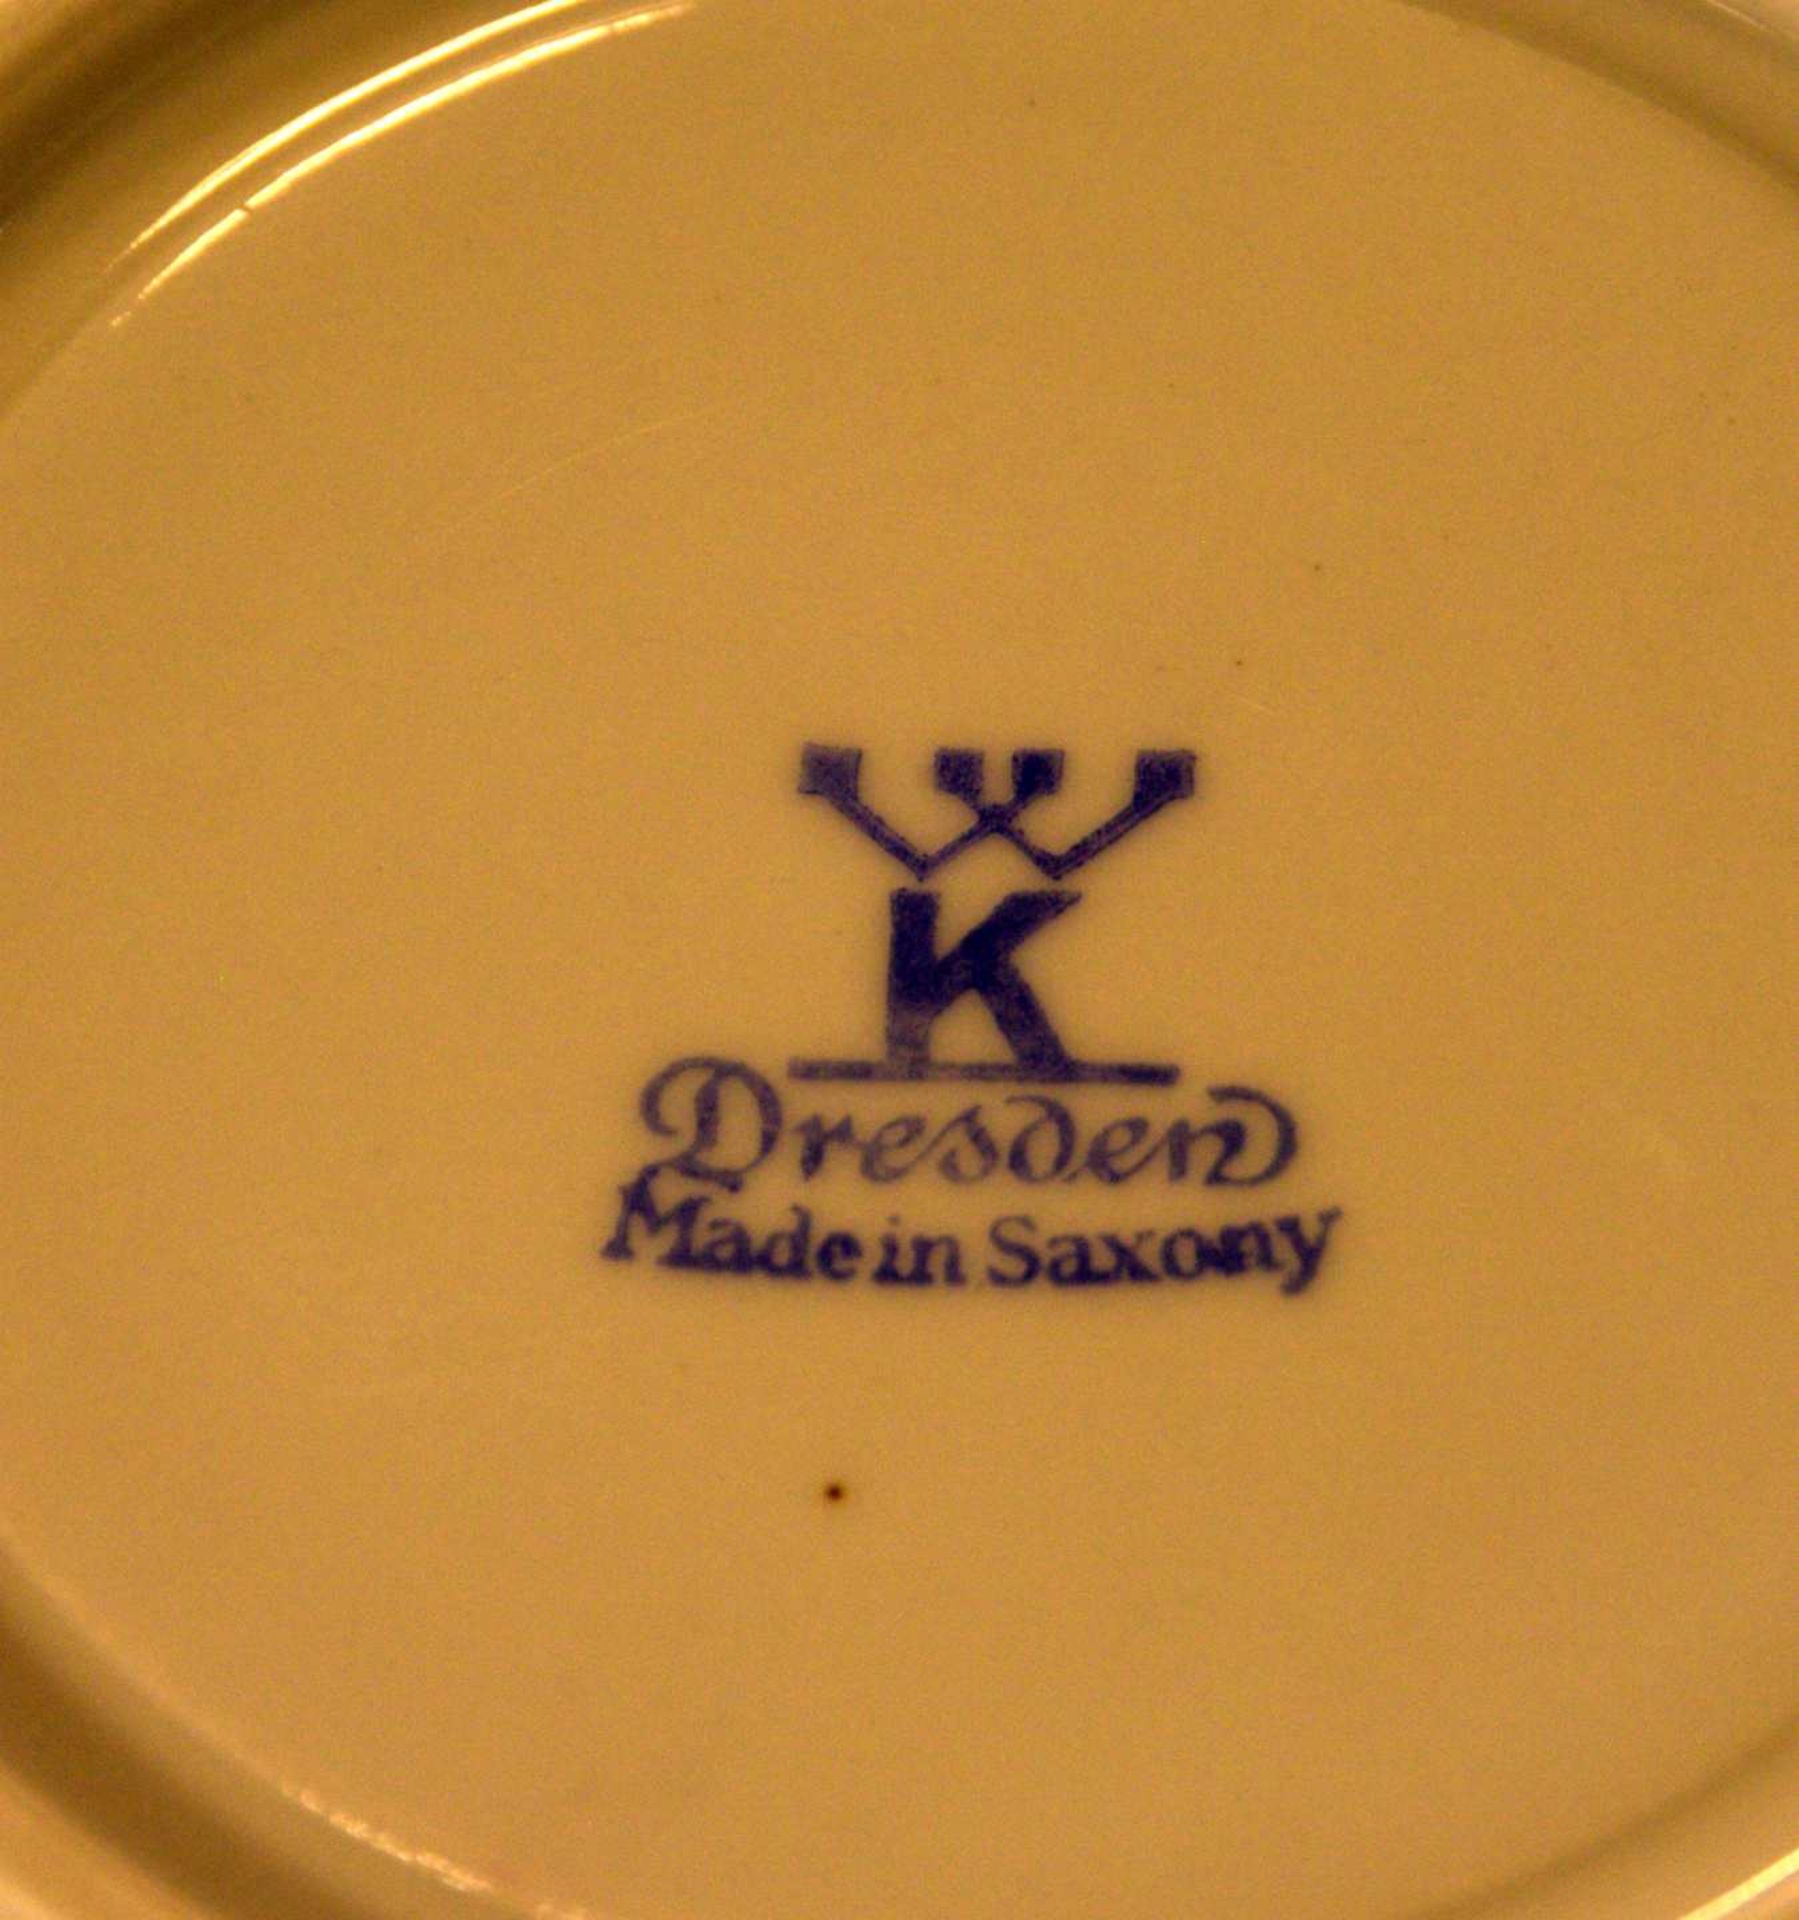 Tasse mit Untertasse, Kuchenteller, Dresden,bez. Made in Saxony, polychrom bemalt, bre - Bild 2 aus 2